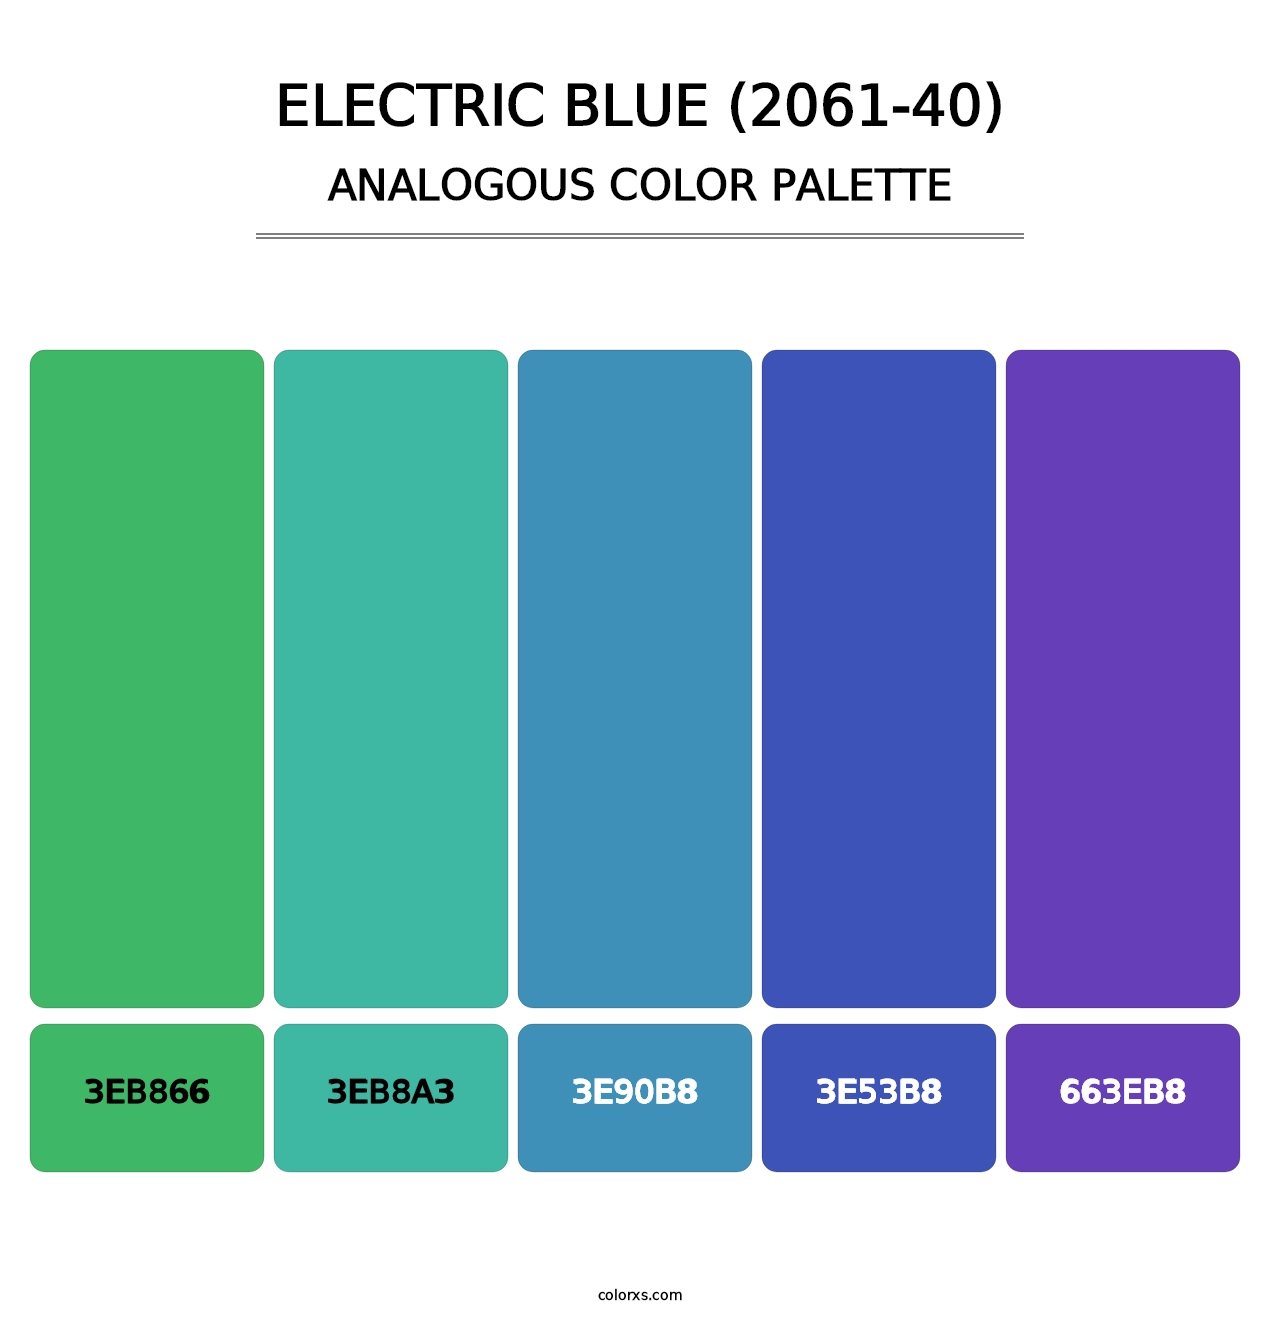 Electric Blue (2061-40) - Analogous Color Palette